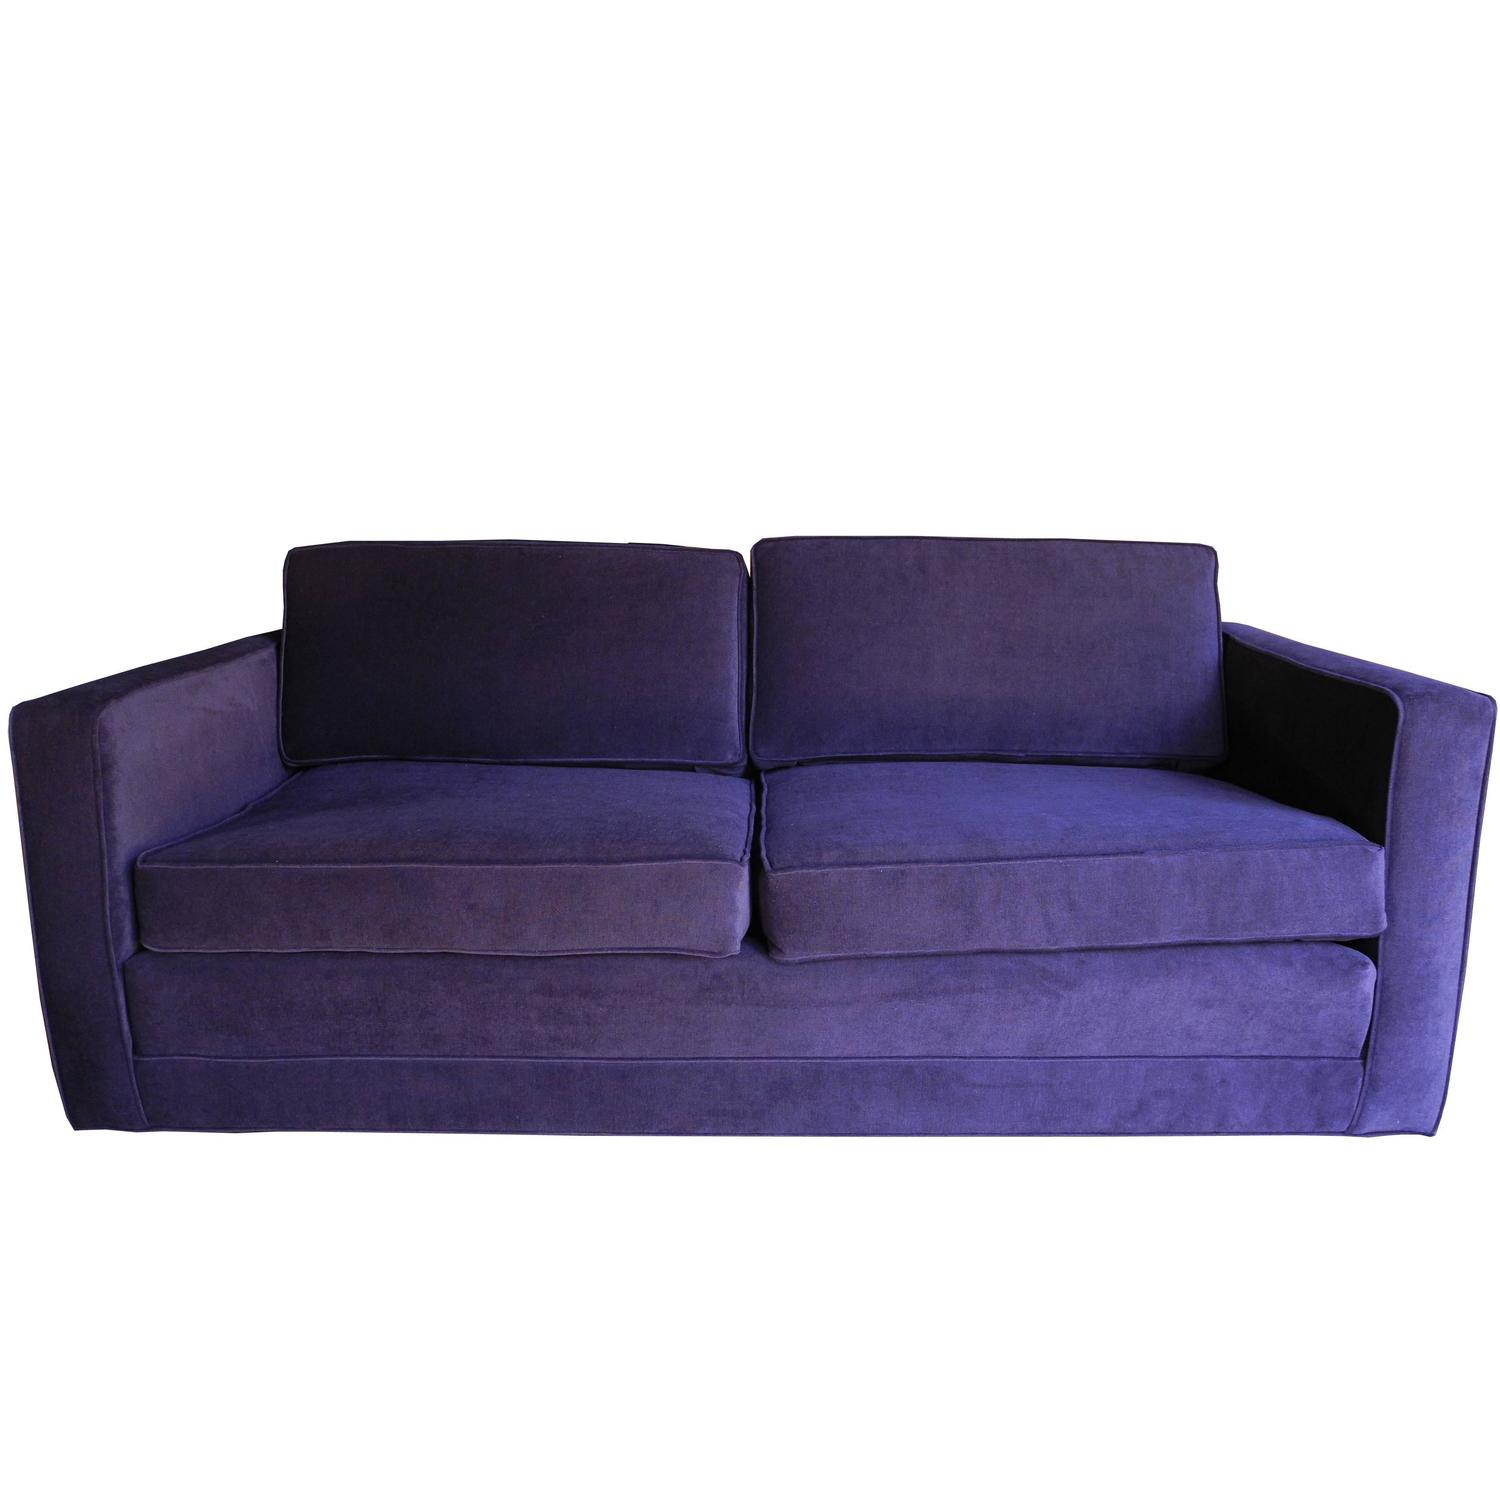 sofa settee mid-century modern purple velvet sofa / settee by charles pfister for QSHVNQY